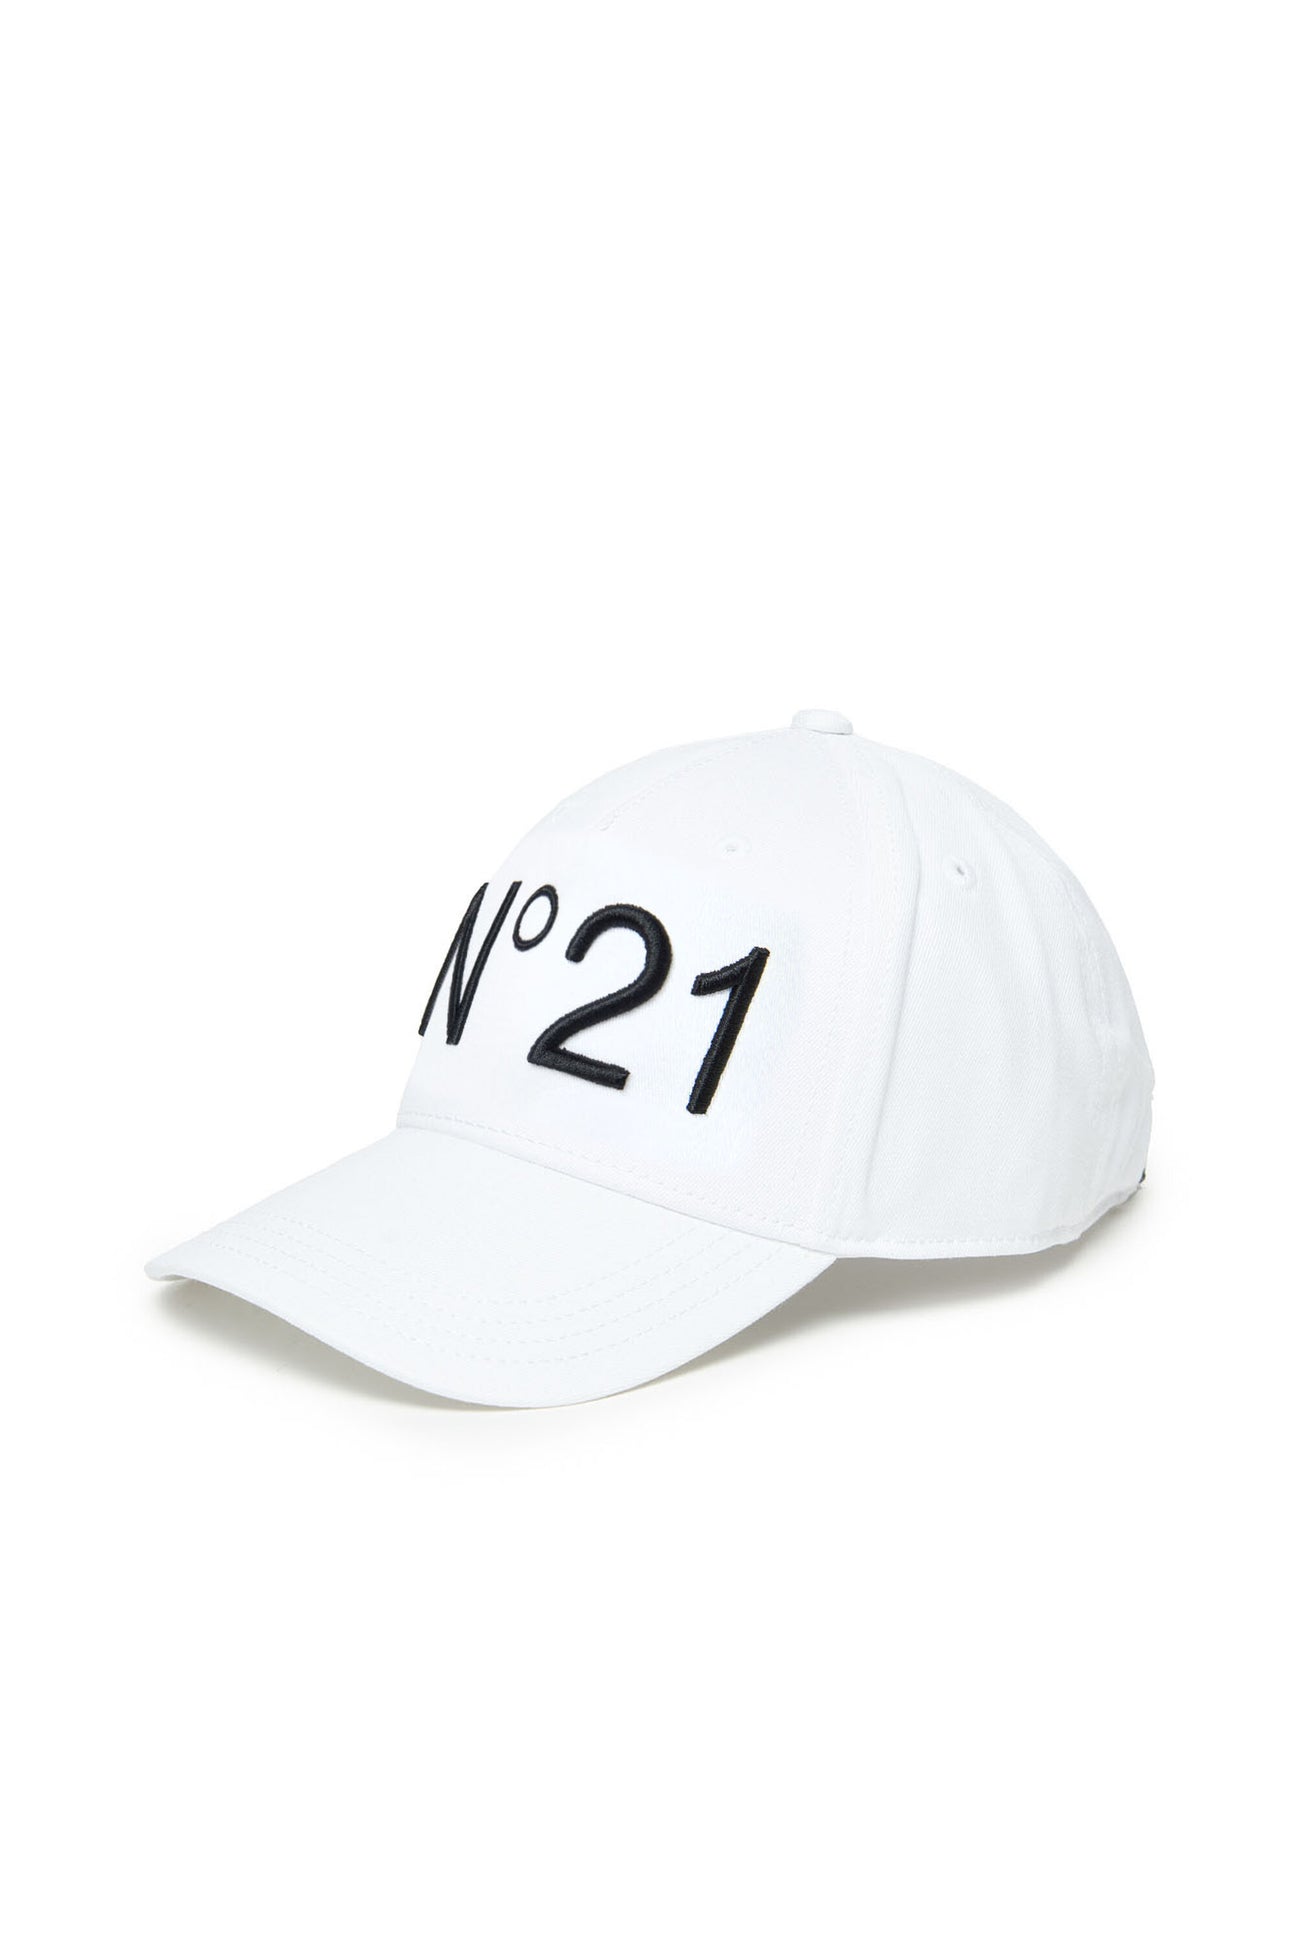 White gabardine baseball cap with logo White gabardine baseball cap with logo